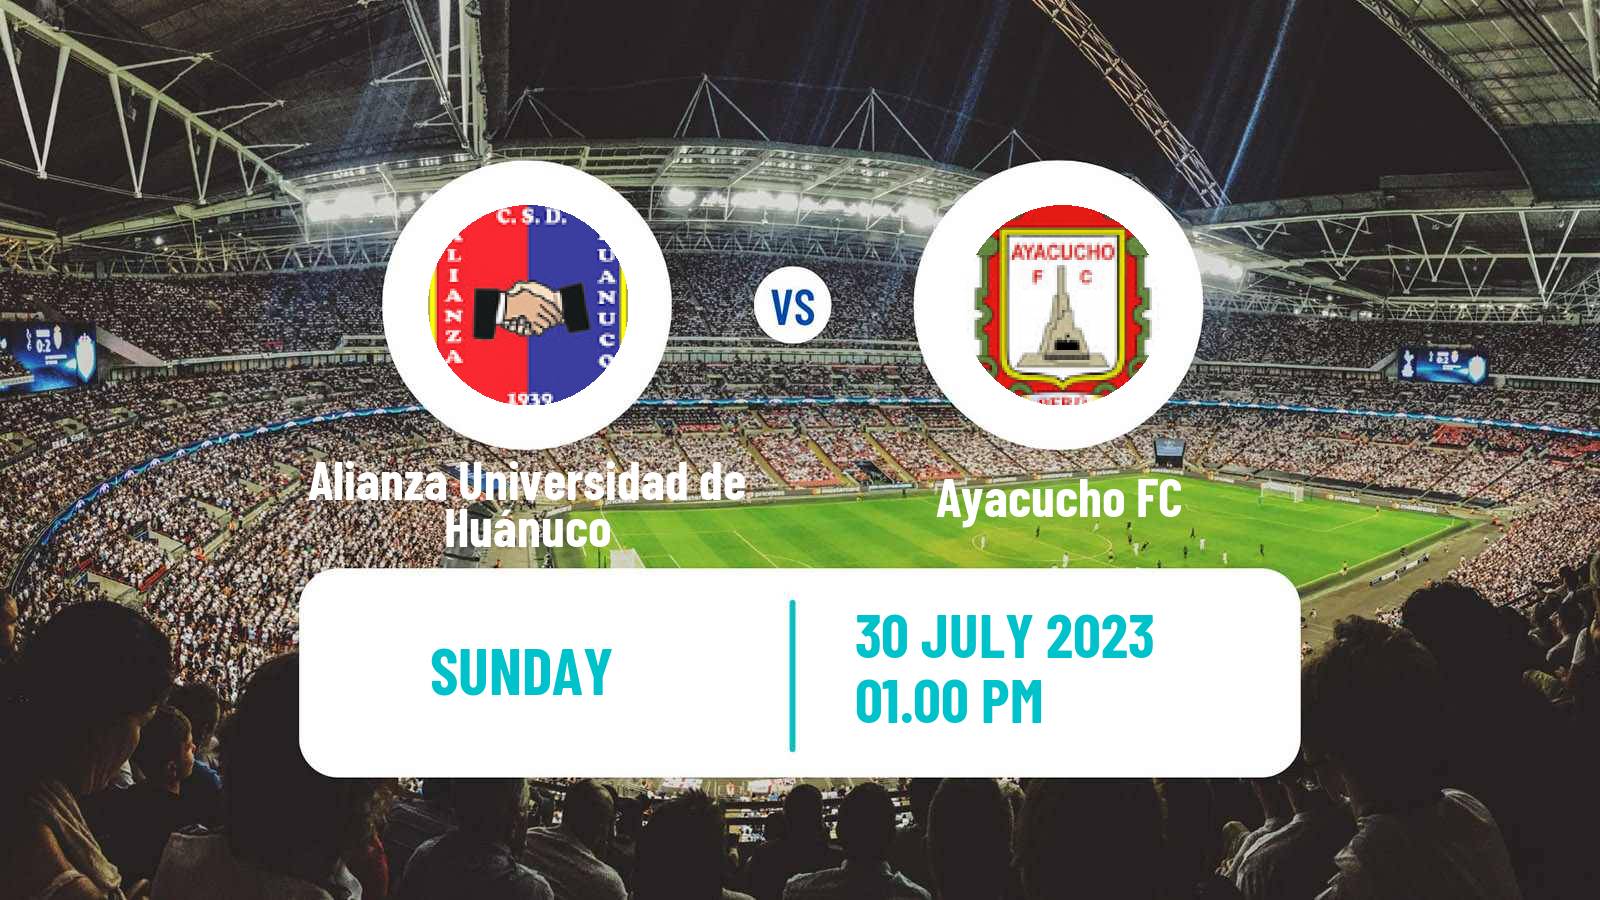 Soccer Peruvian Liga 2 Alianza Universidad de Huánuco - Ayacucho